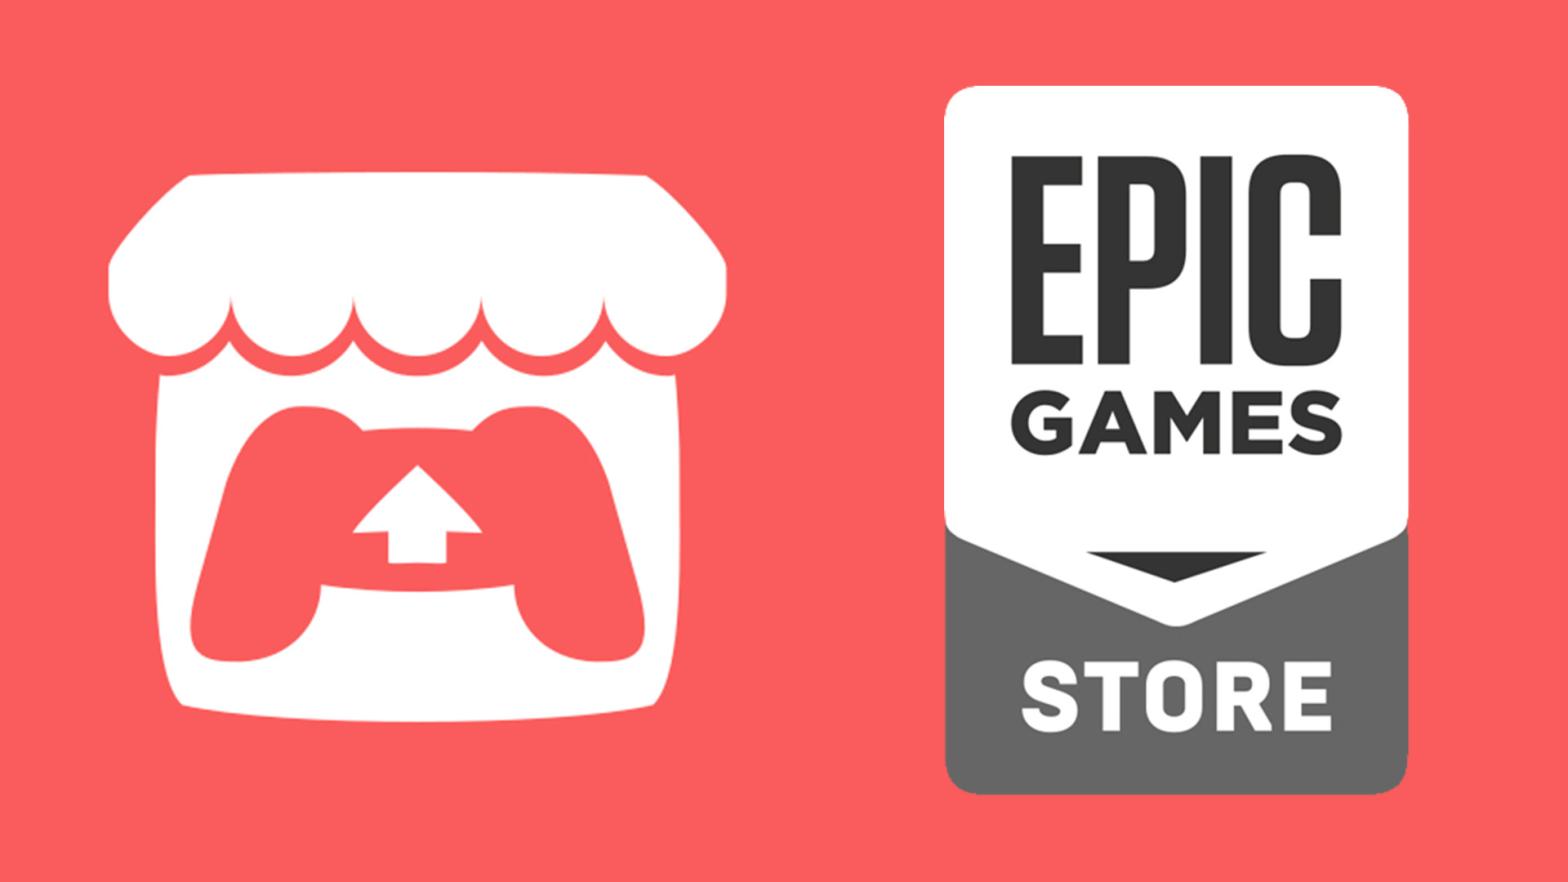 Image: Epic Games / Itch.io / Kotaku